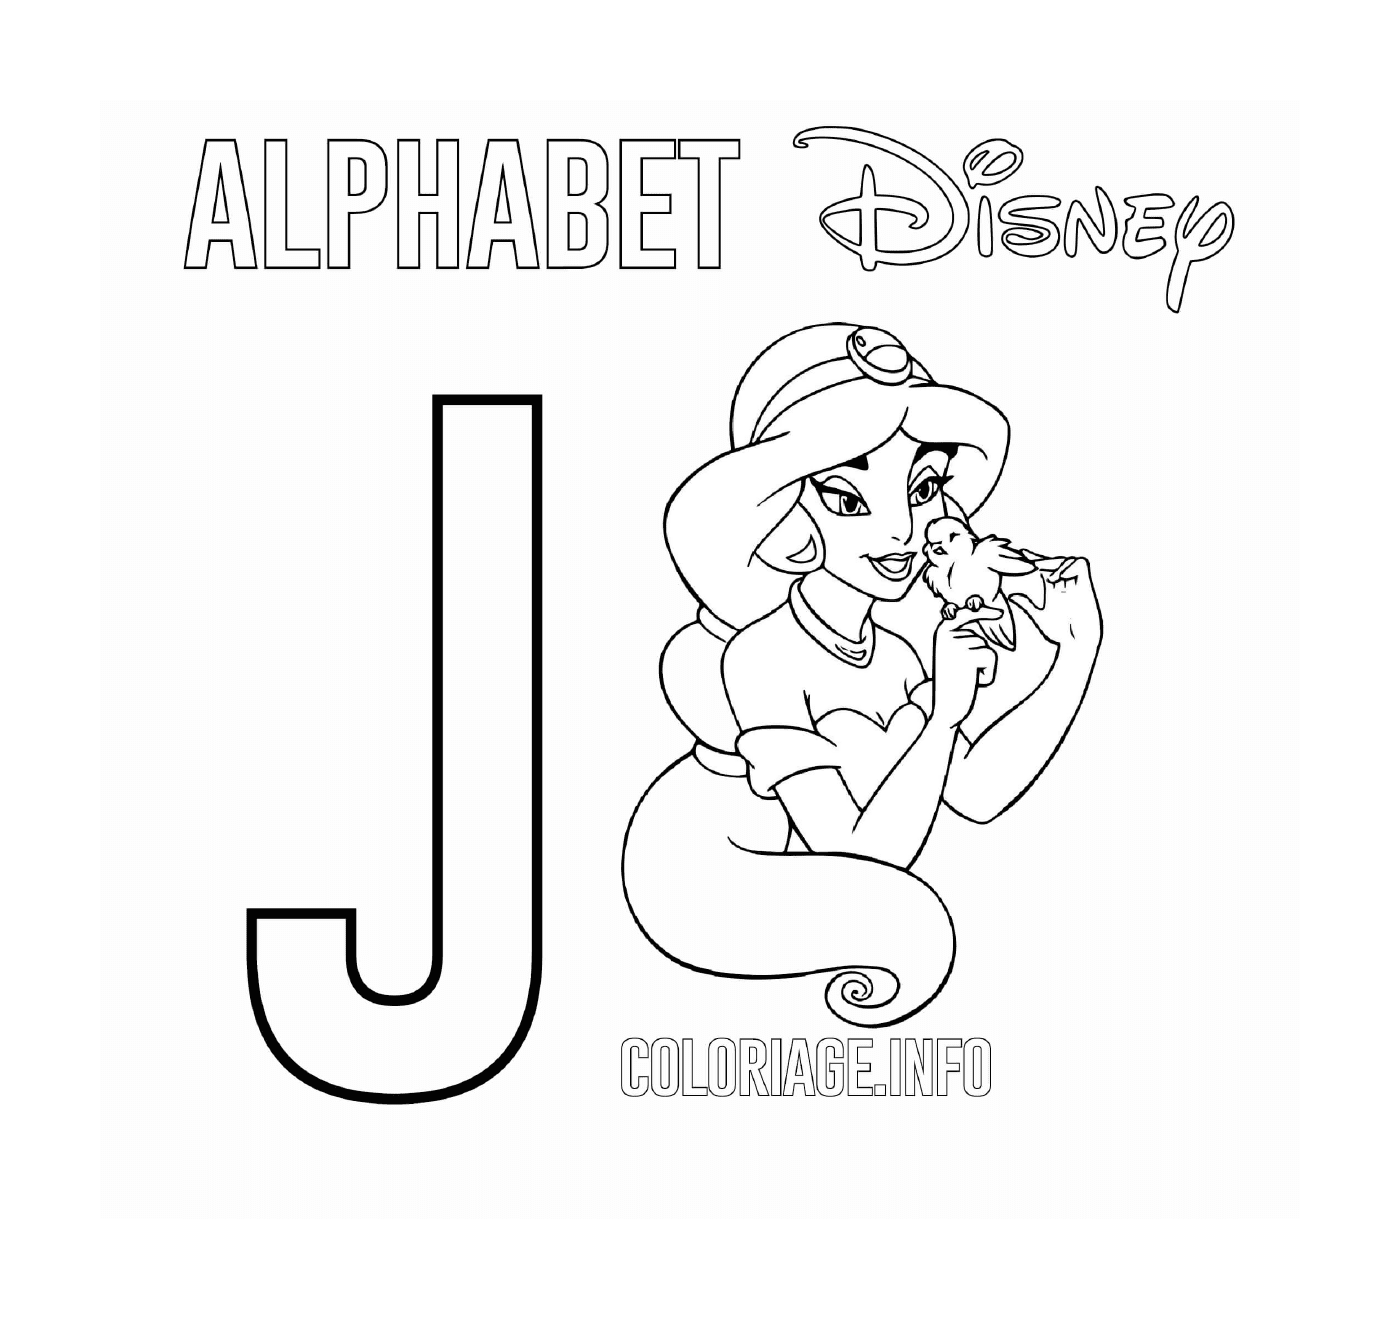  A letra J para Jasmine 